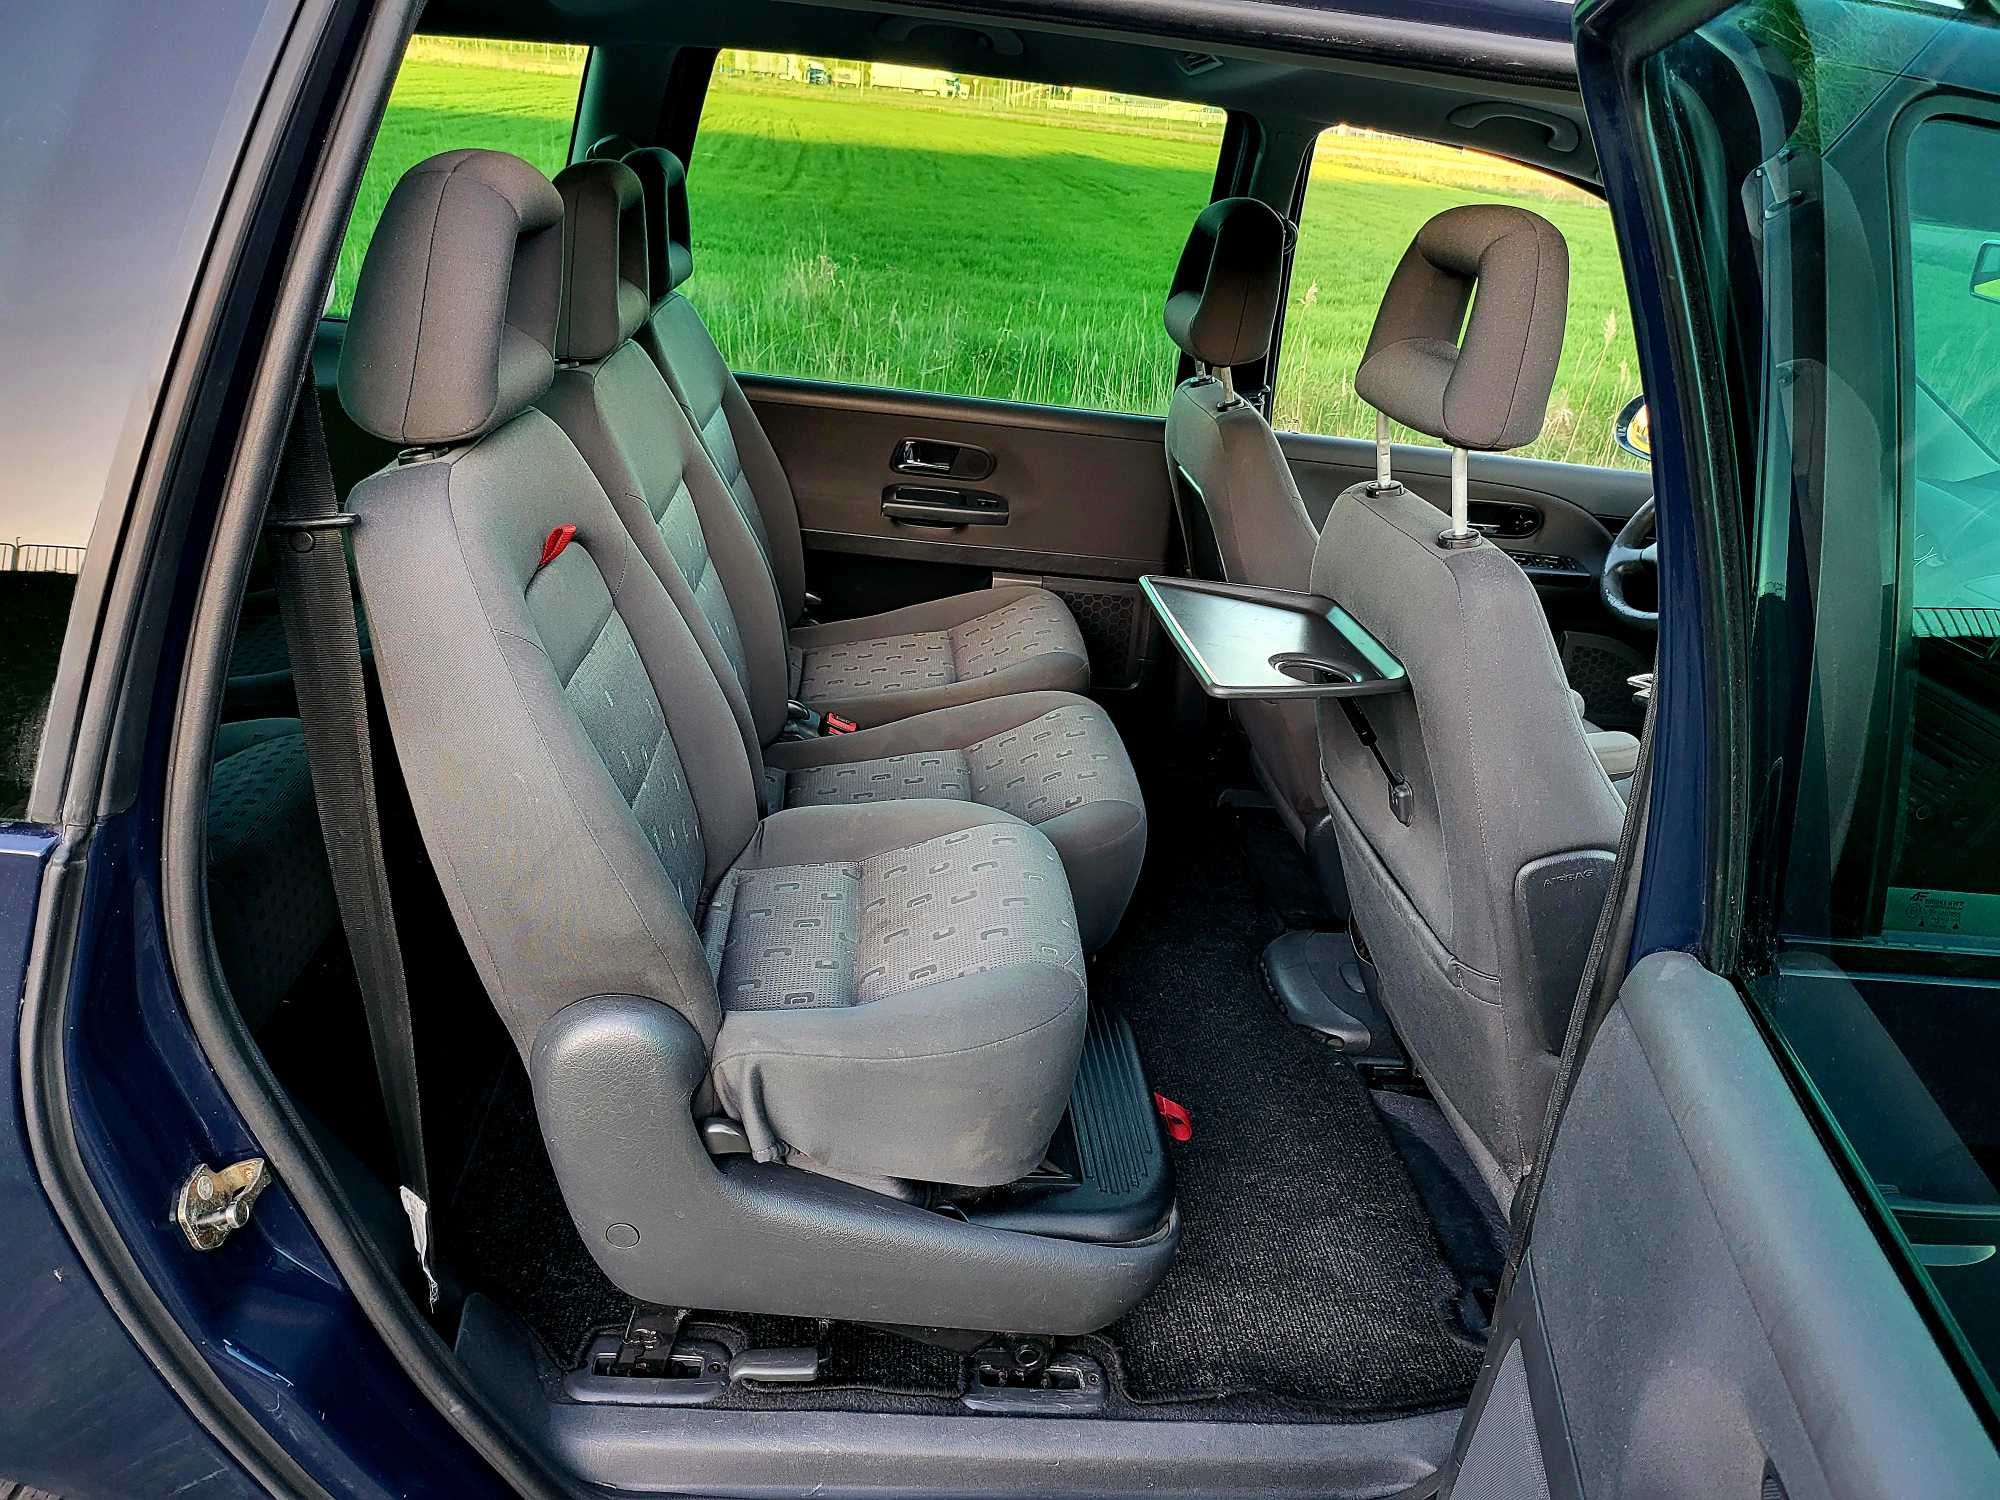 VW SHARAN 2.0 B 06 7os klima grz.fotele 6bieg hak 3x foteliki JAK NOWY